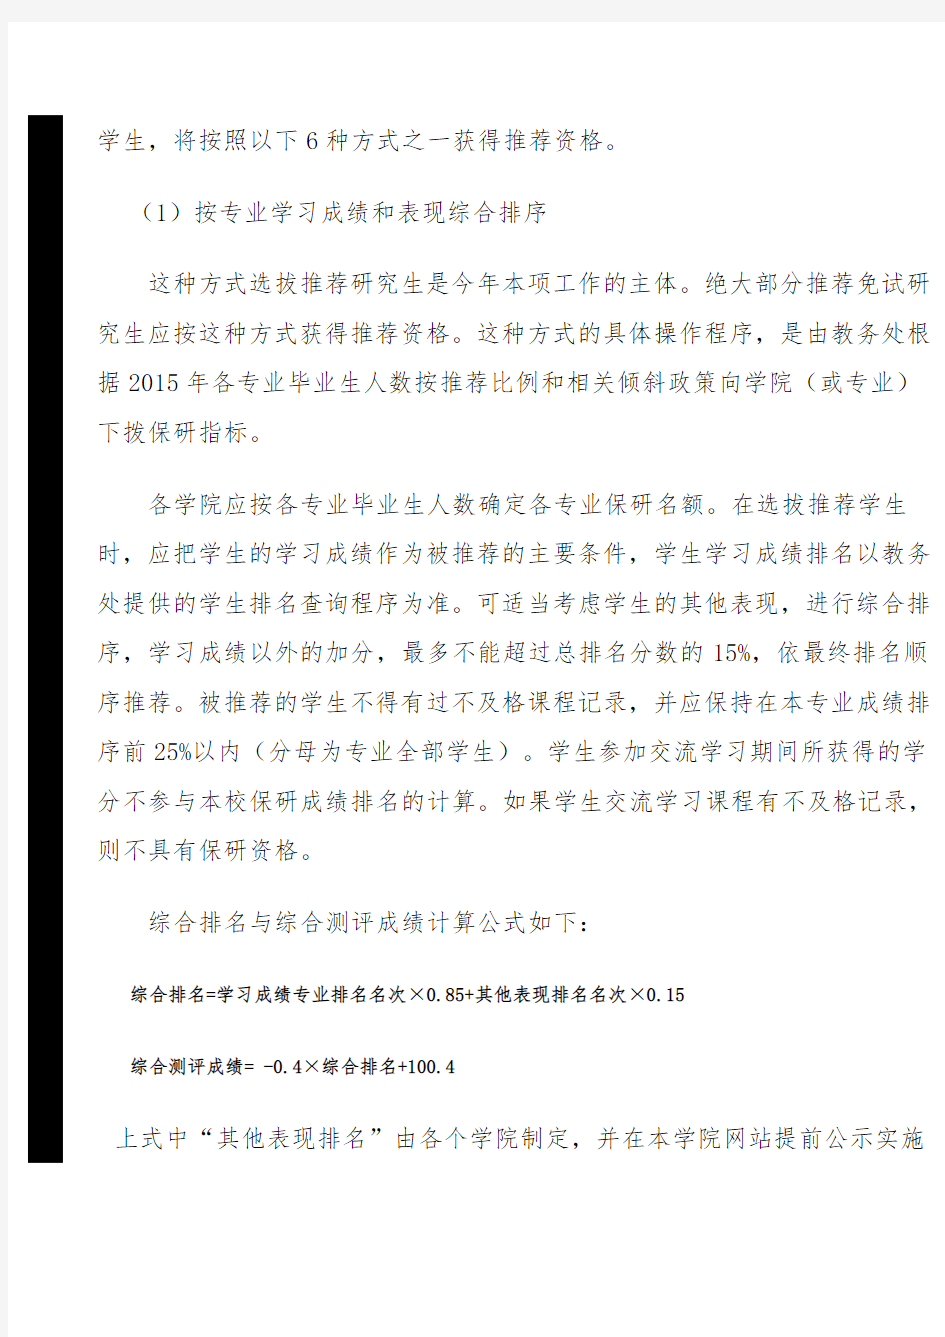 北京理工大学2015年推荐免试攻读硕士研究生工作办法